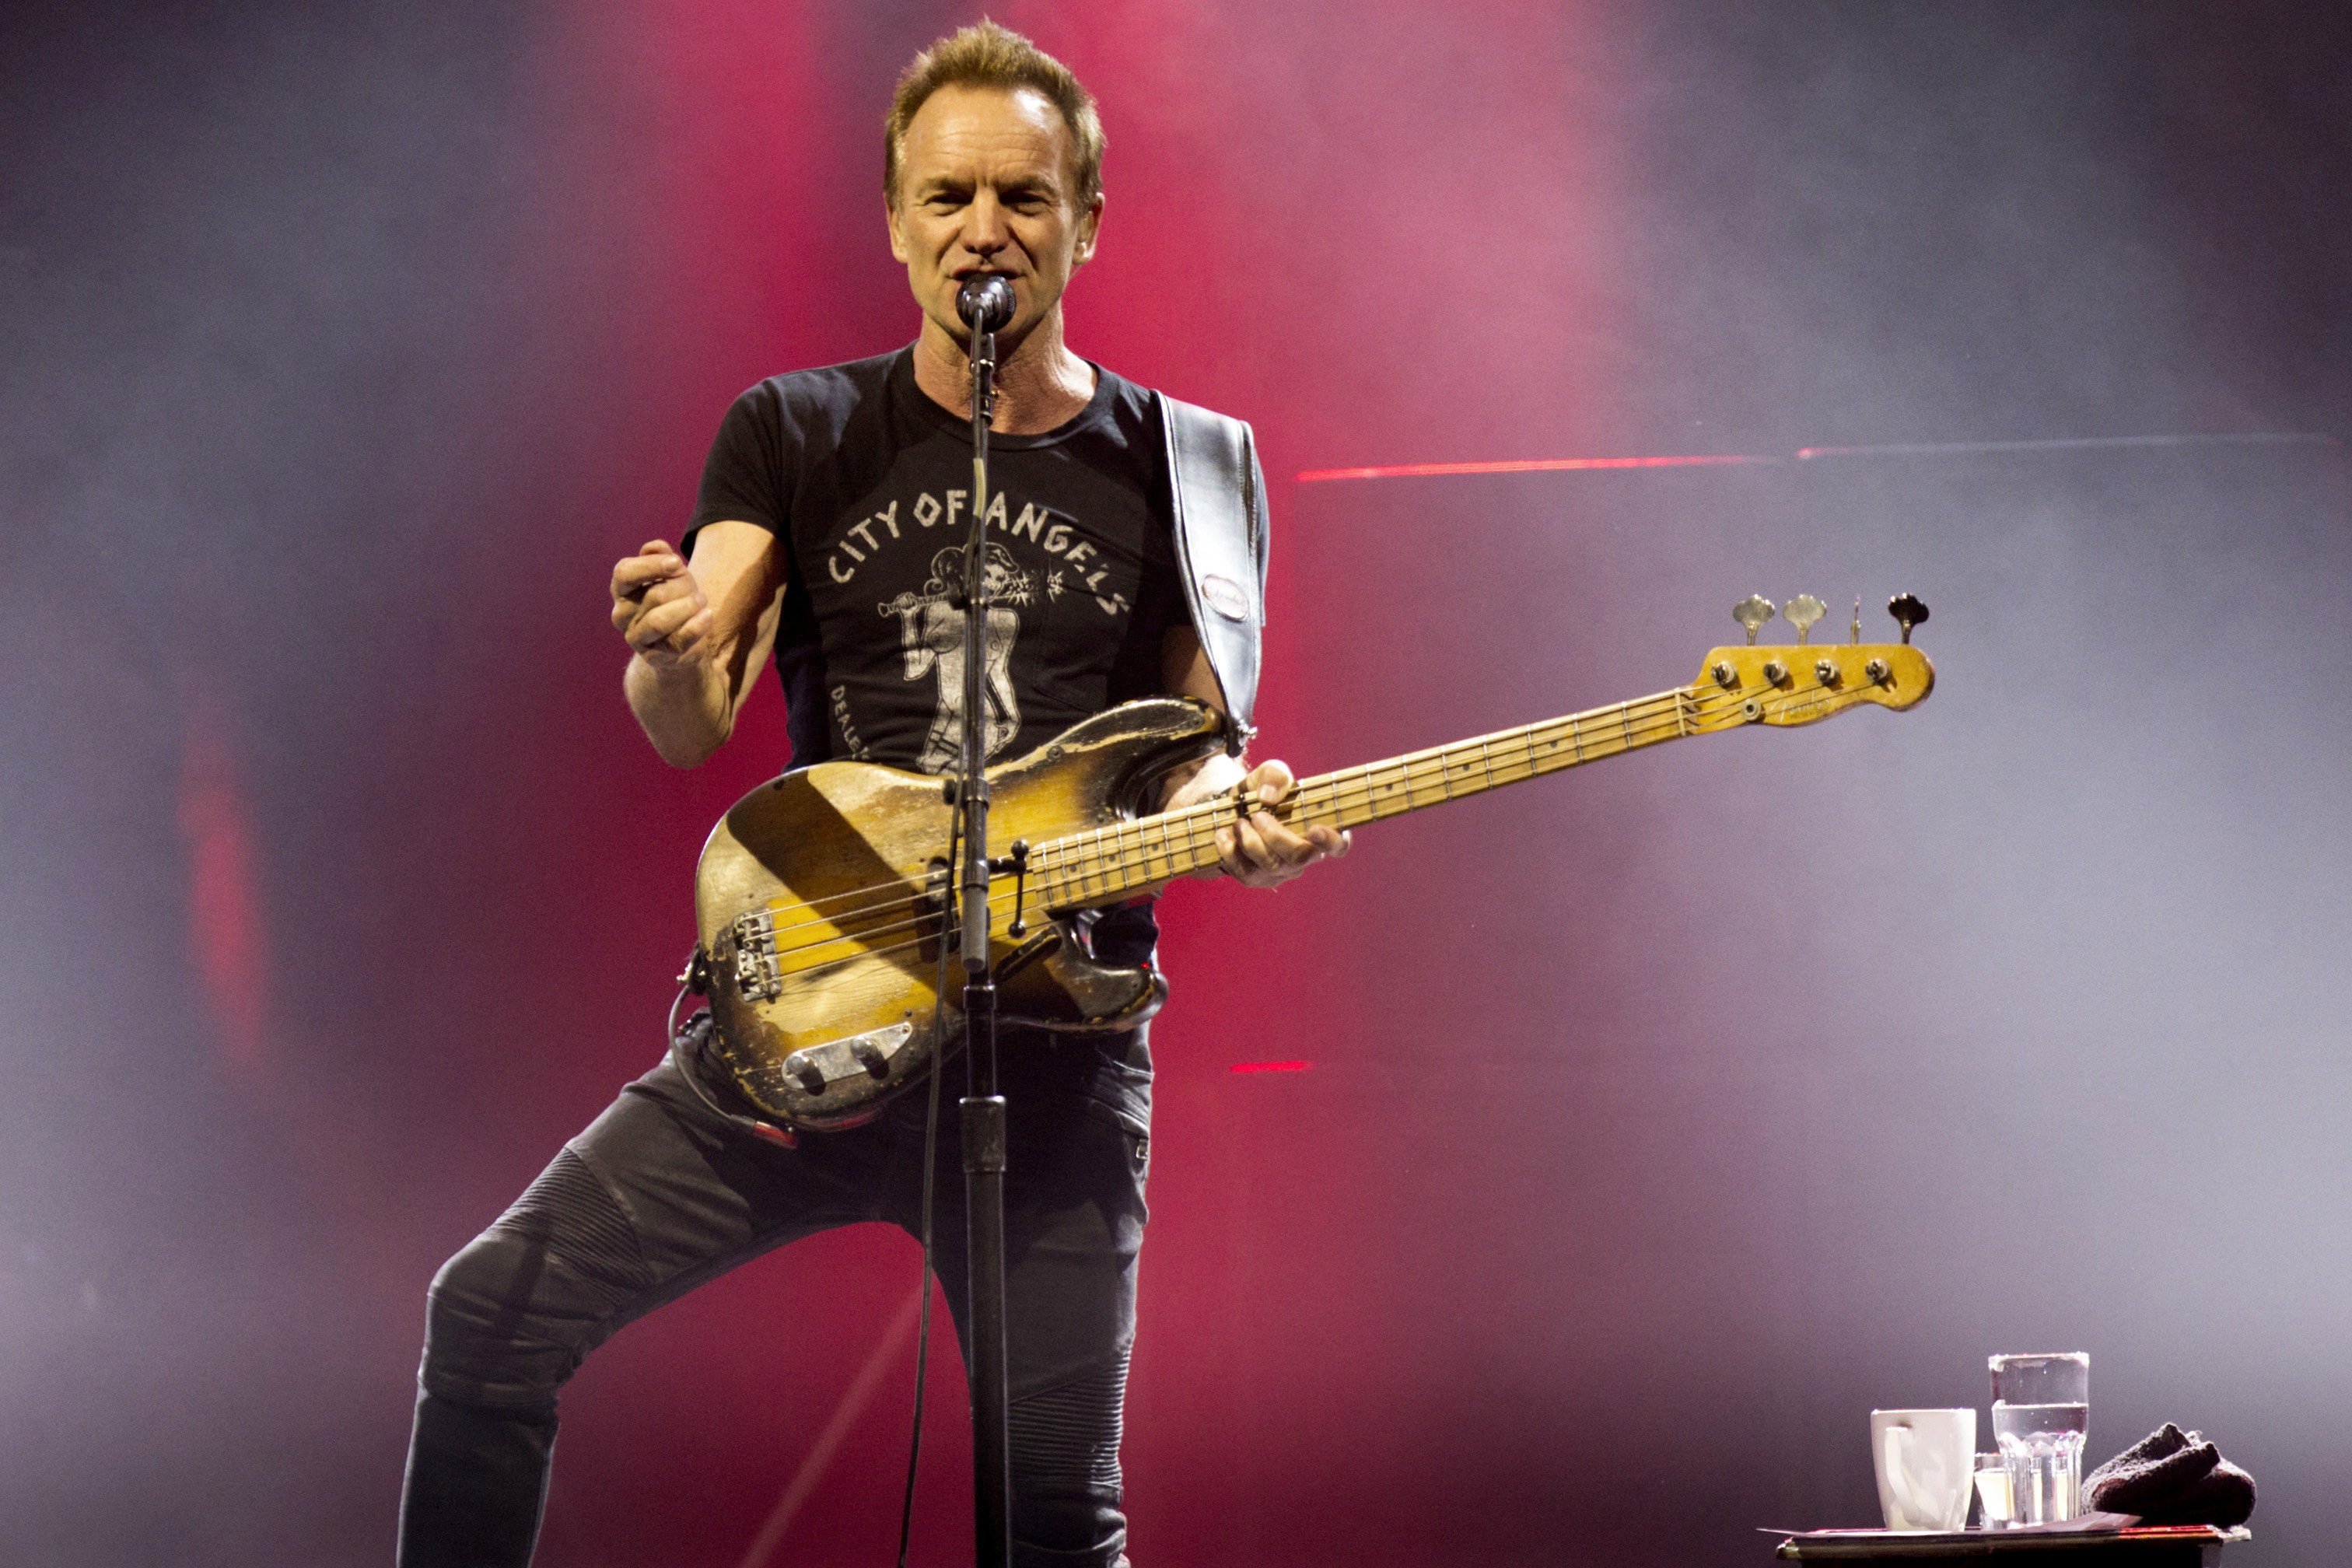 L'esperit de The Police sobrevola el concert d'Sting a Barcelona